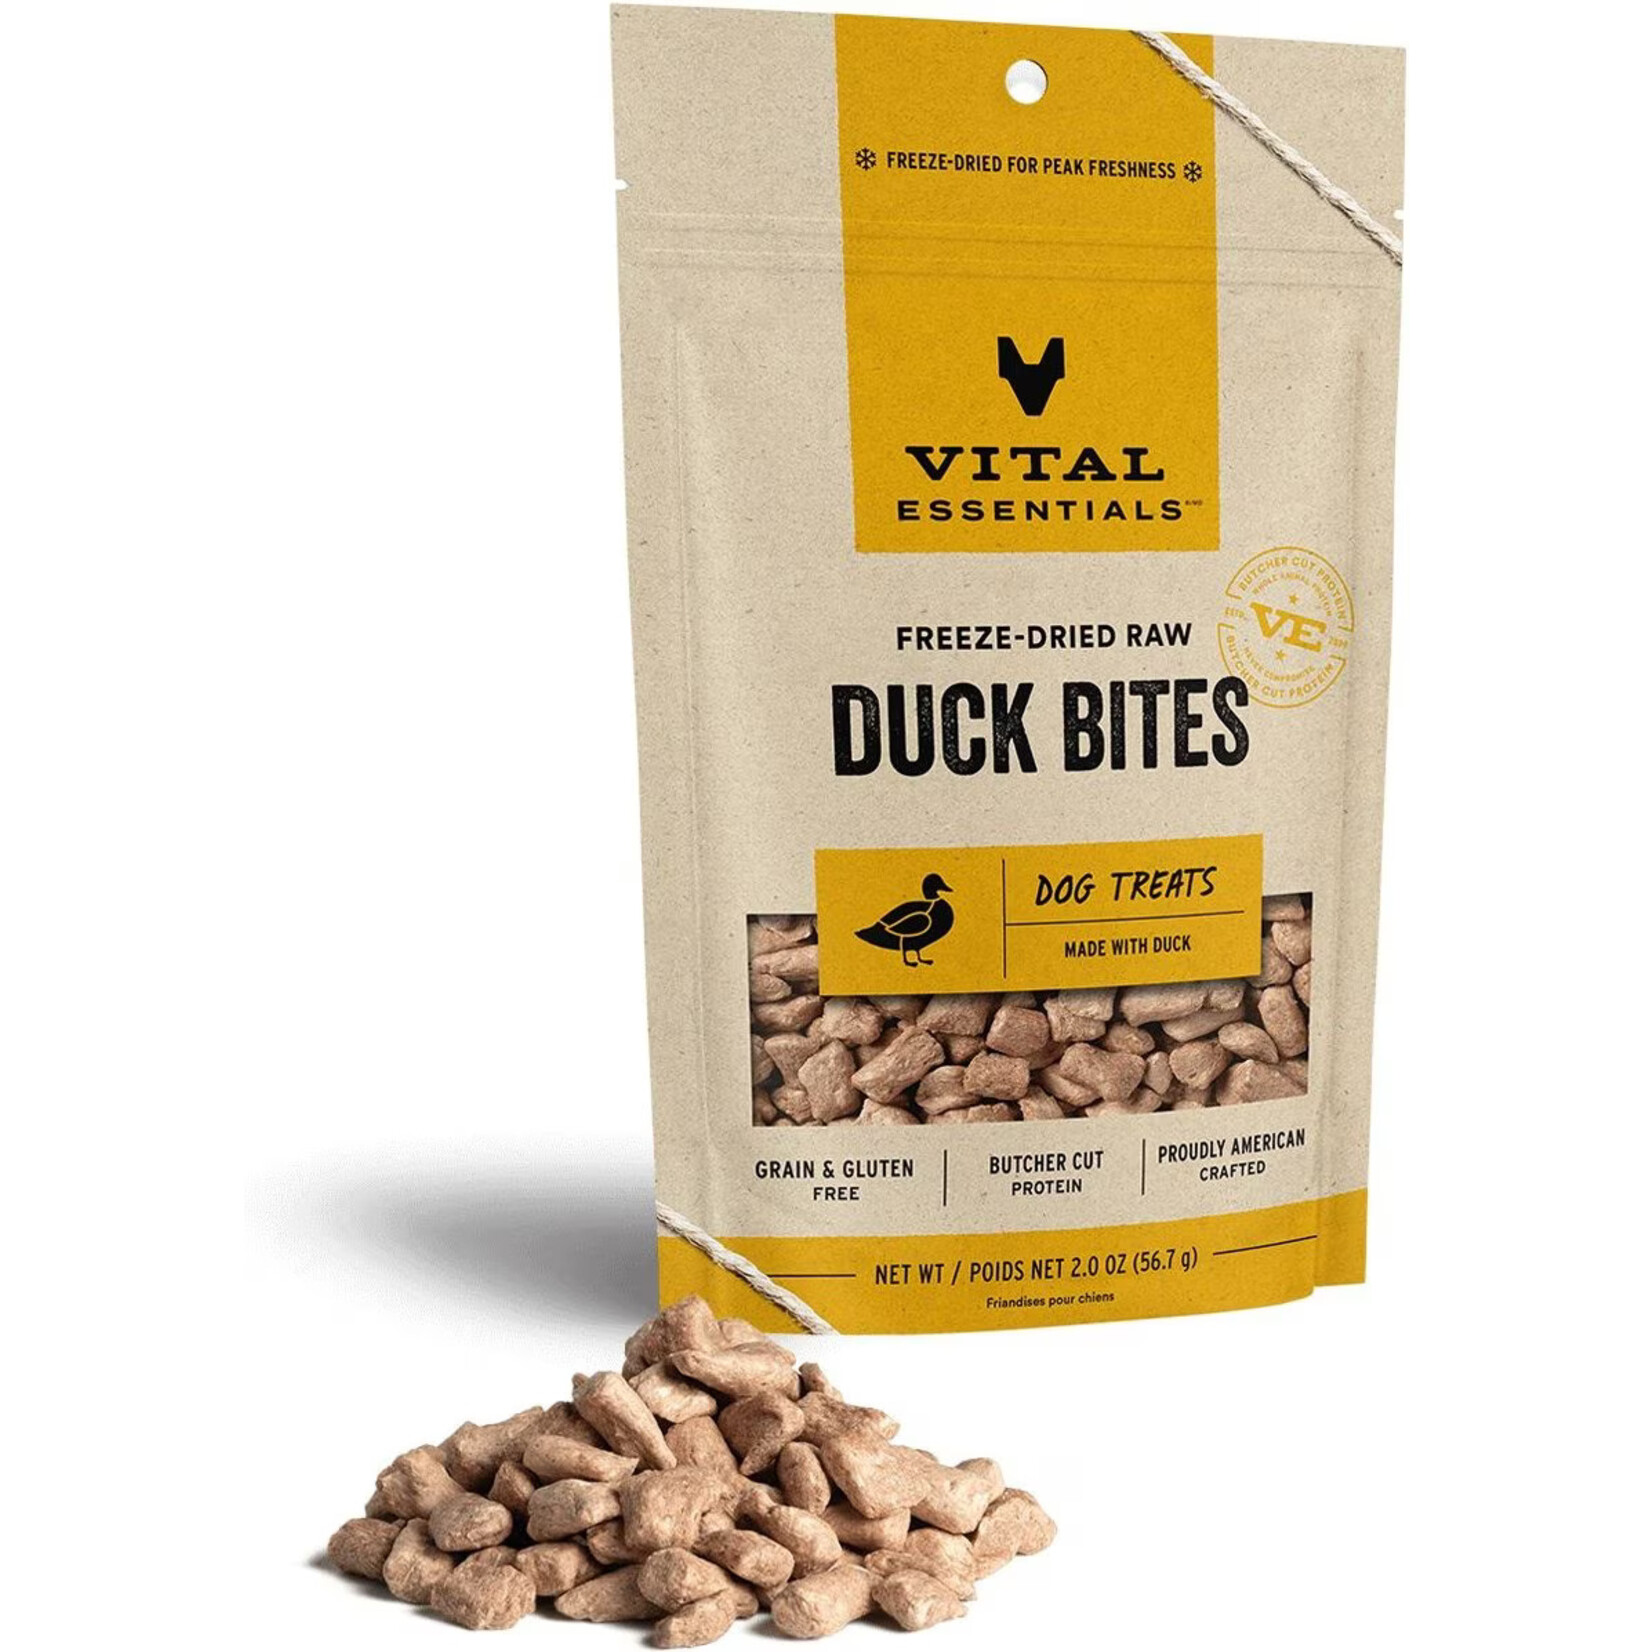 Vital Essentials Vital Essentials Freeze-Dried Raw Duck Bites Dog Treats